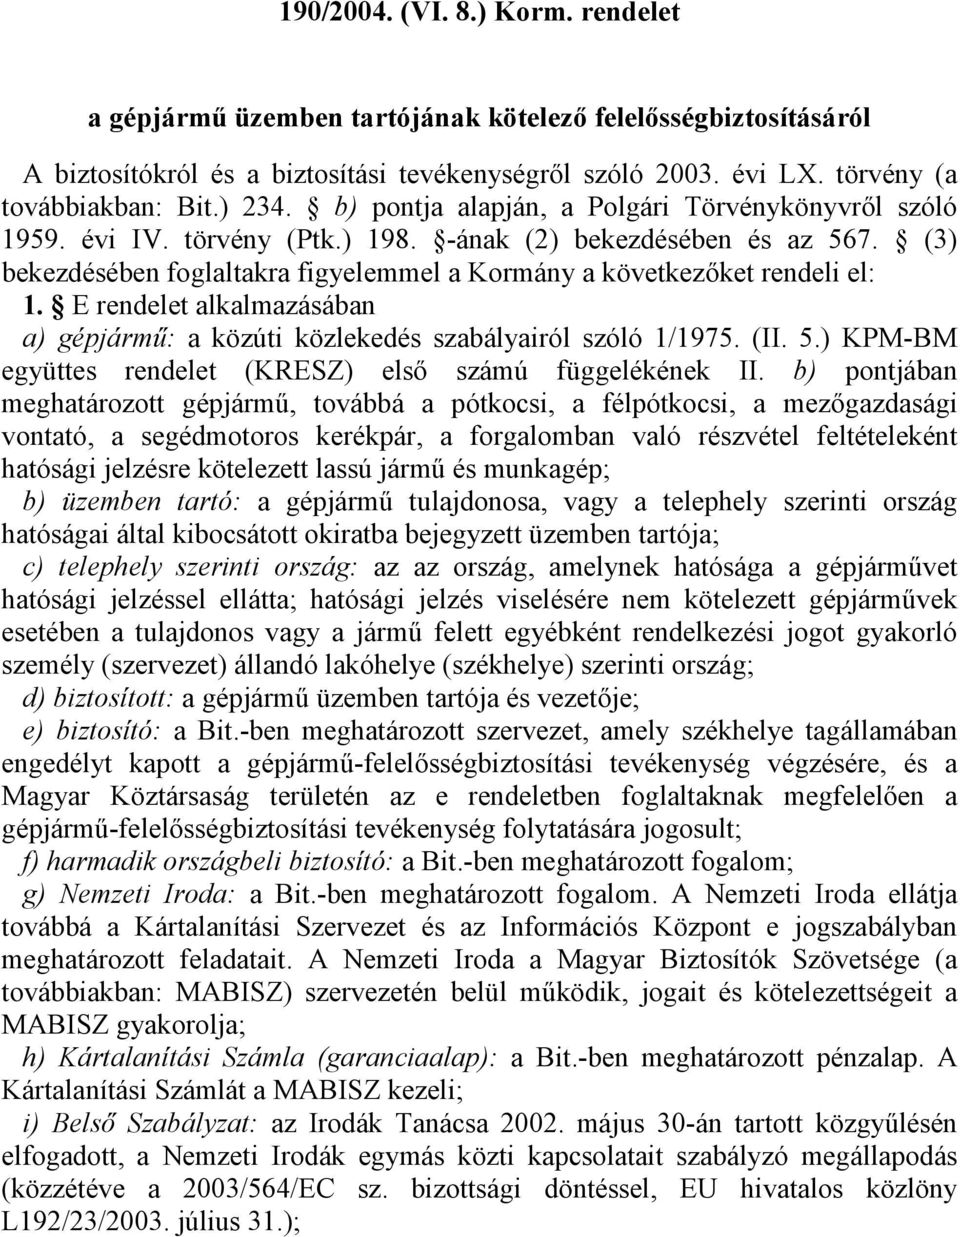 (3) bekezdésében foglaltakra figyelemmel a Kormány a következőket rendeli el: 1. E rendelet alkalmazásában a) gépjármű: a közúti közlekedés szabályairól szóló 1/1975. (II. 5.